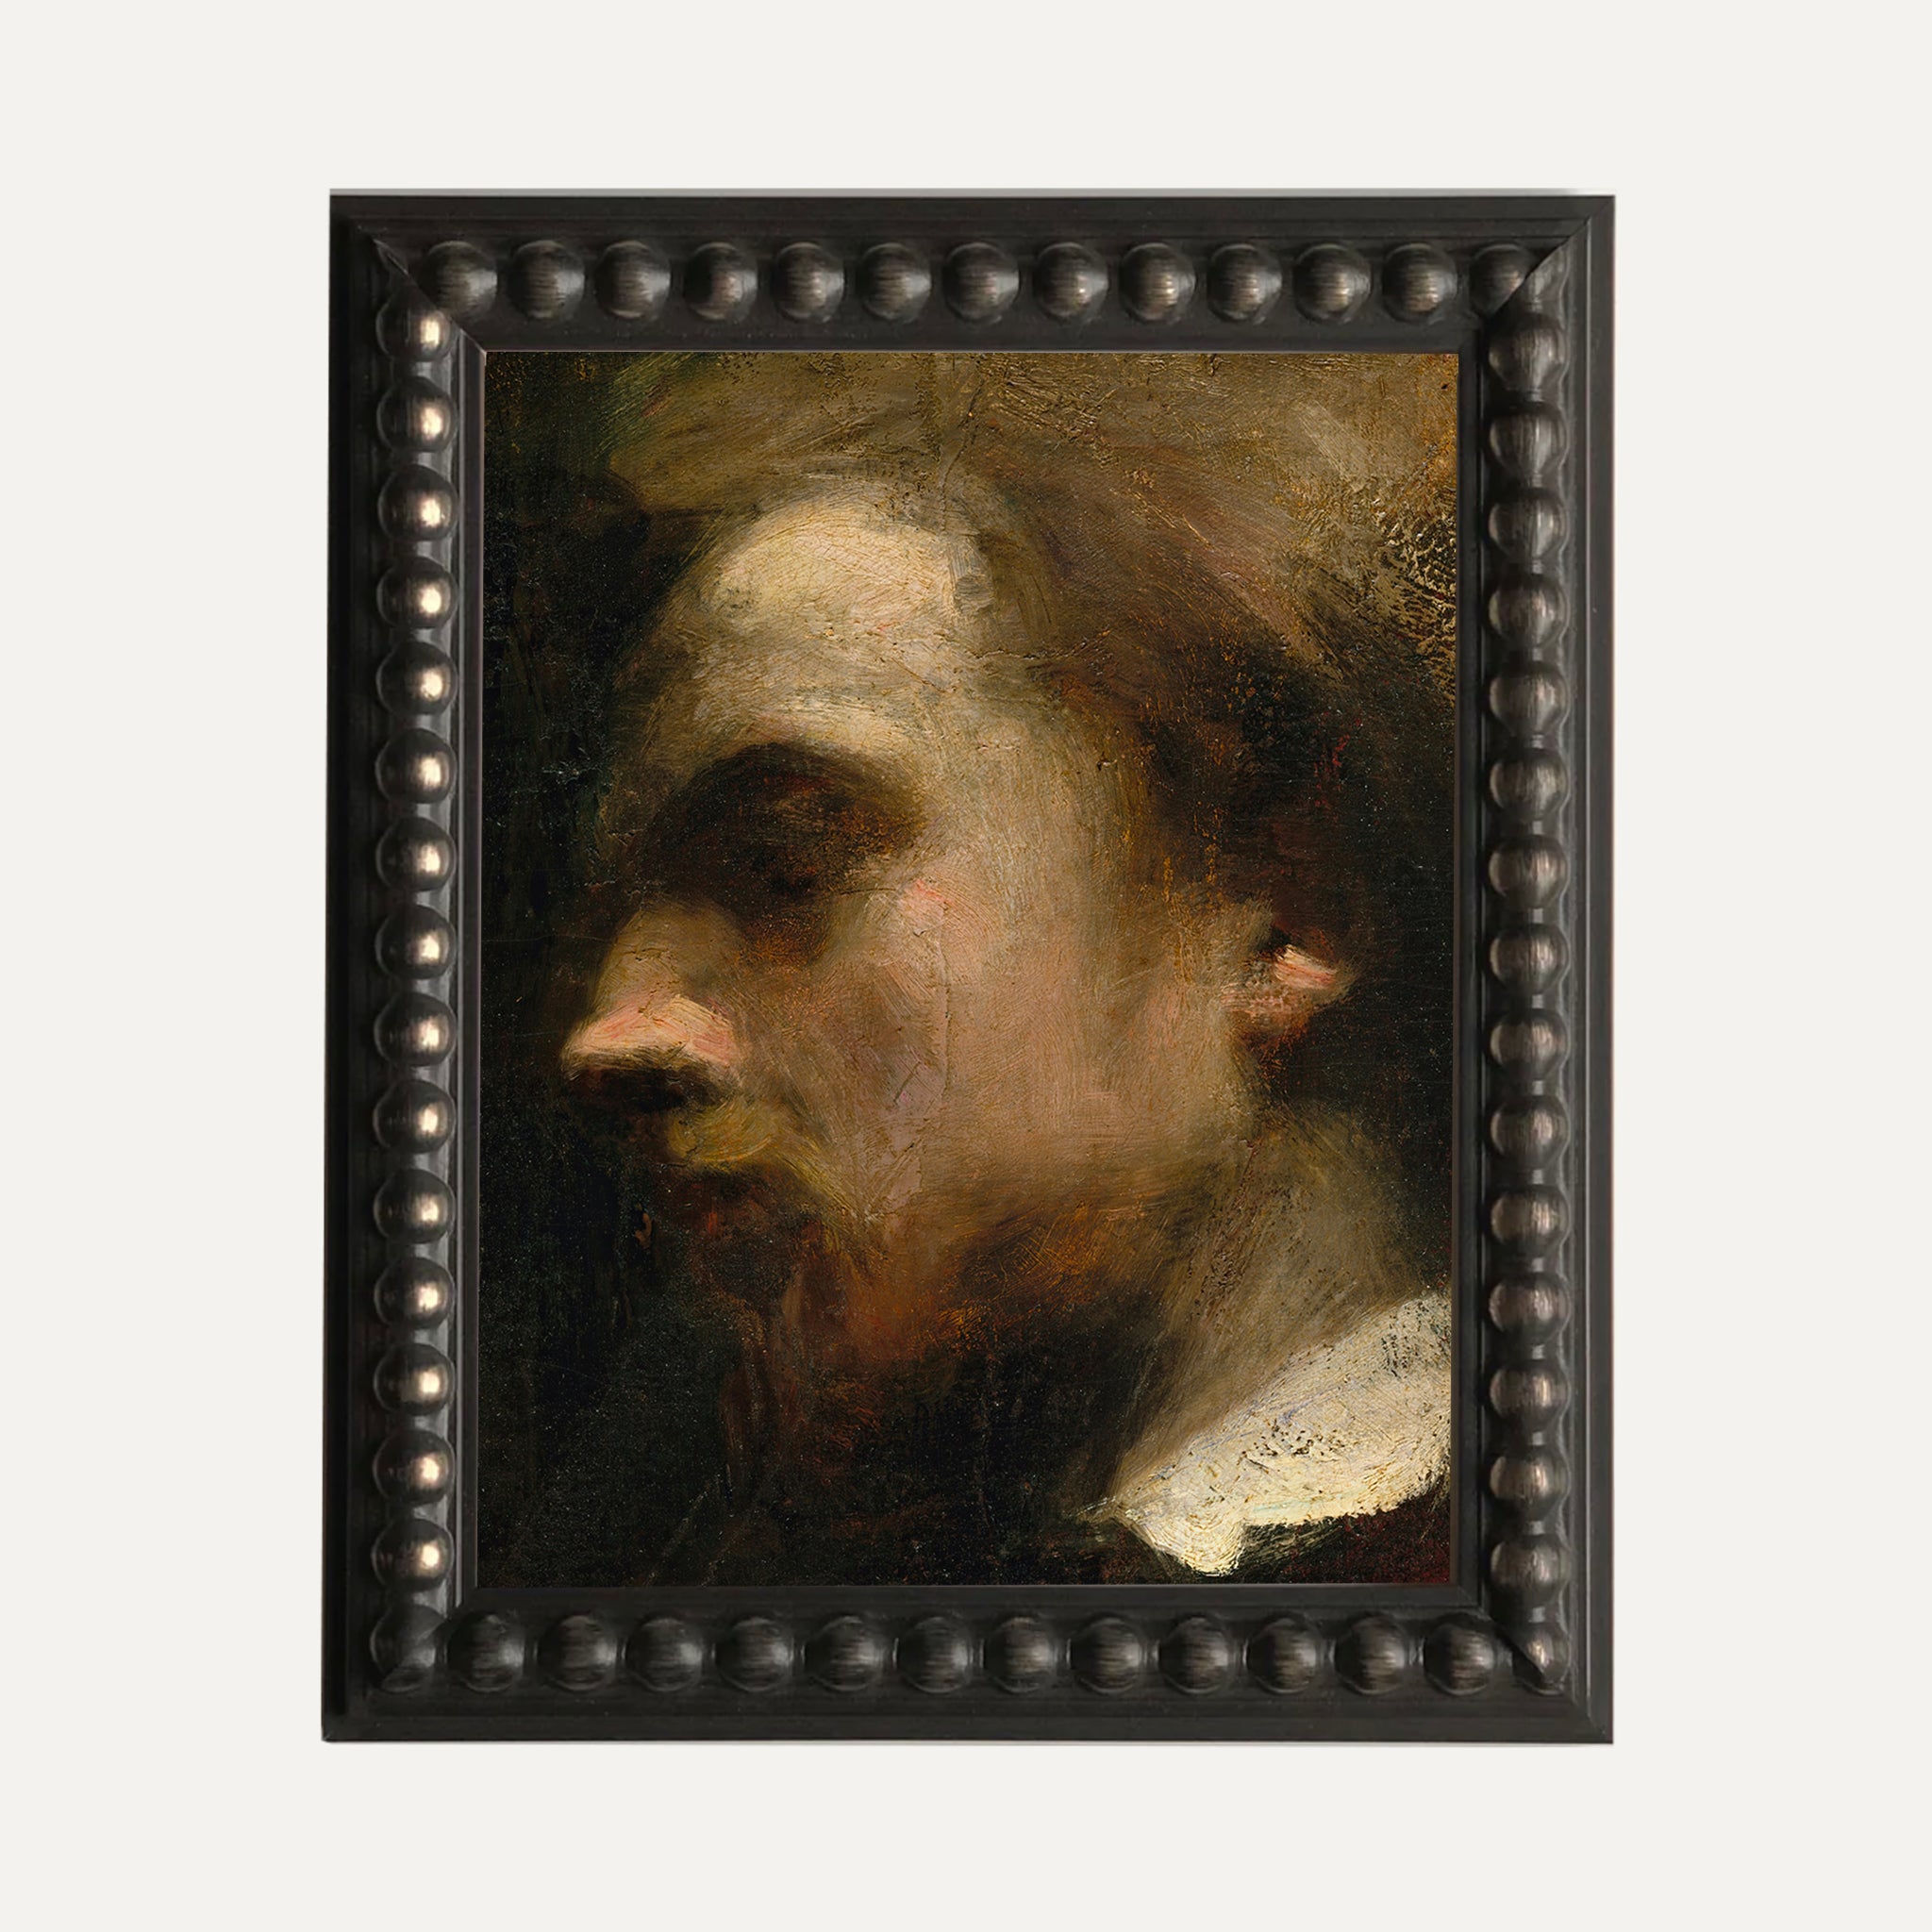 FINE ART PRINT - Henri's portrait